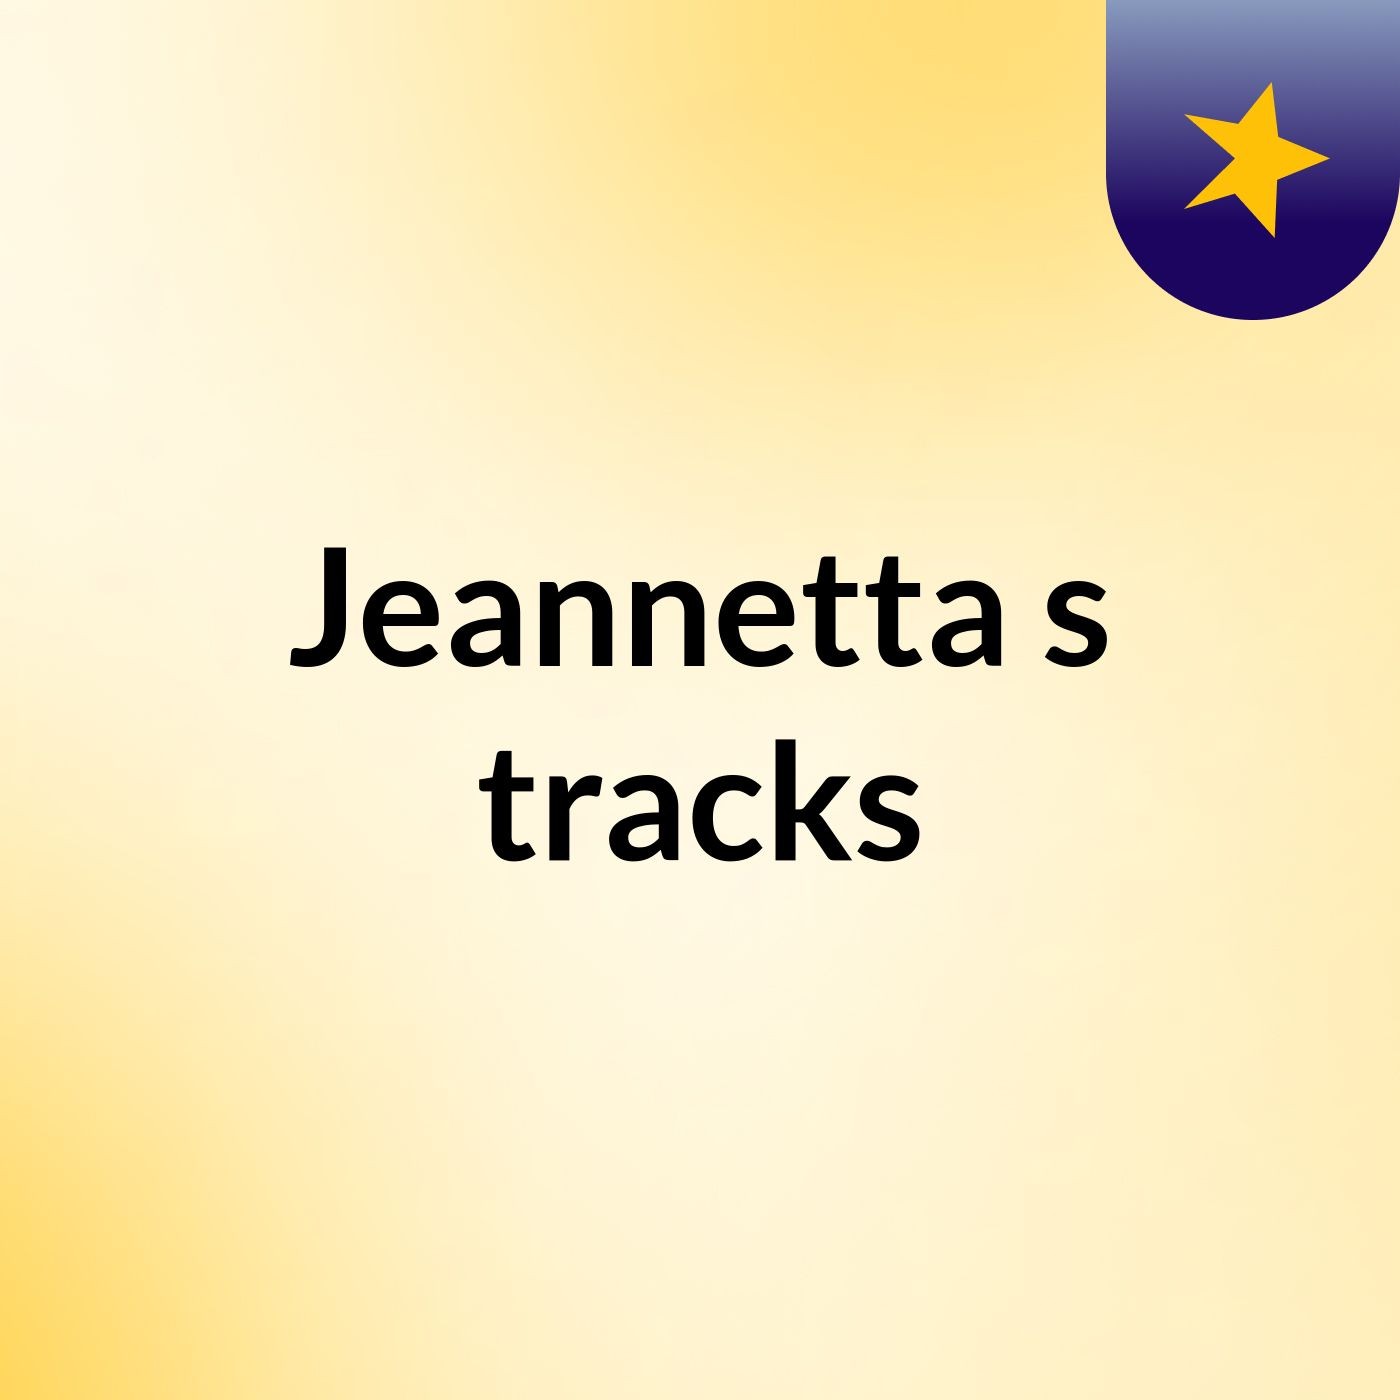 Jeannetta's tracks